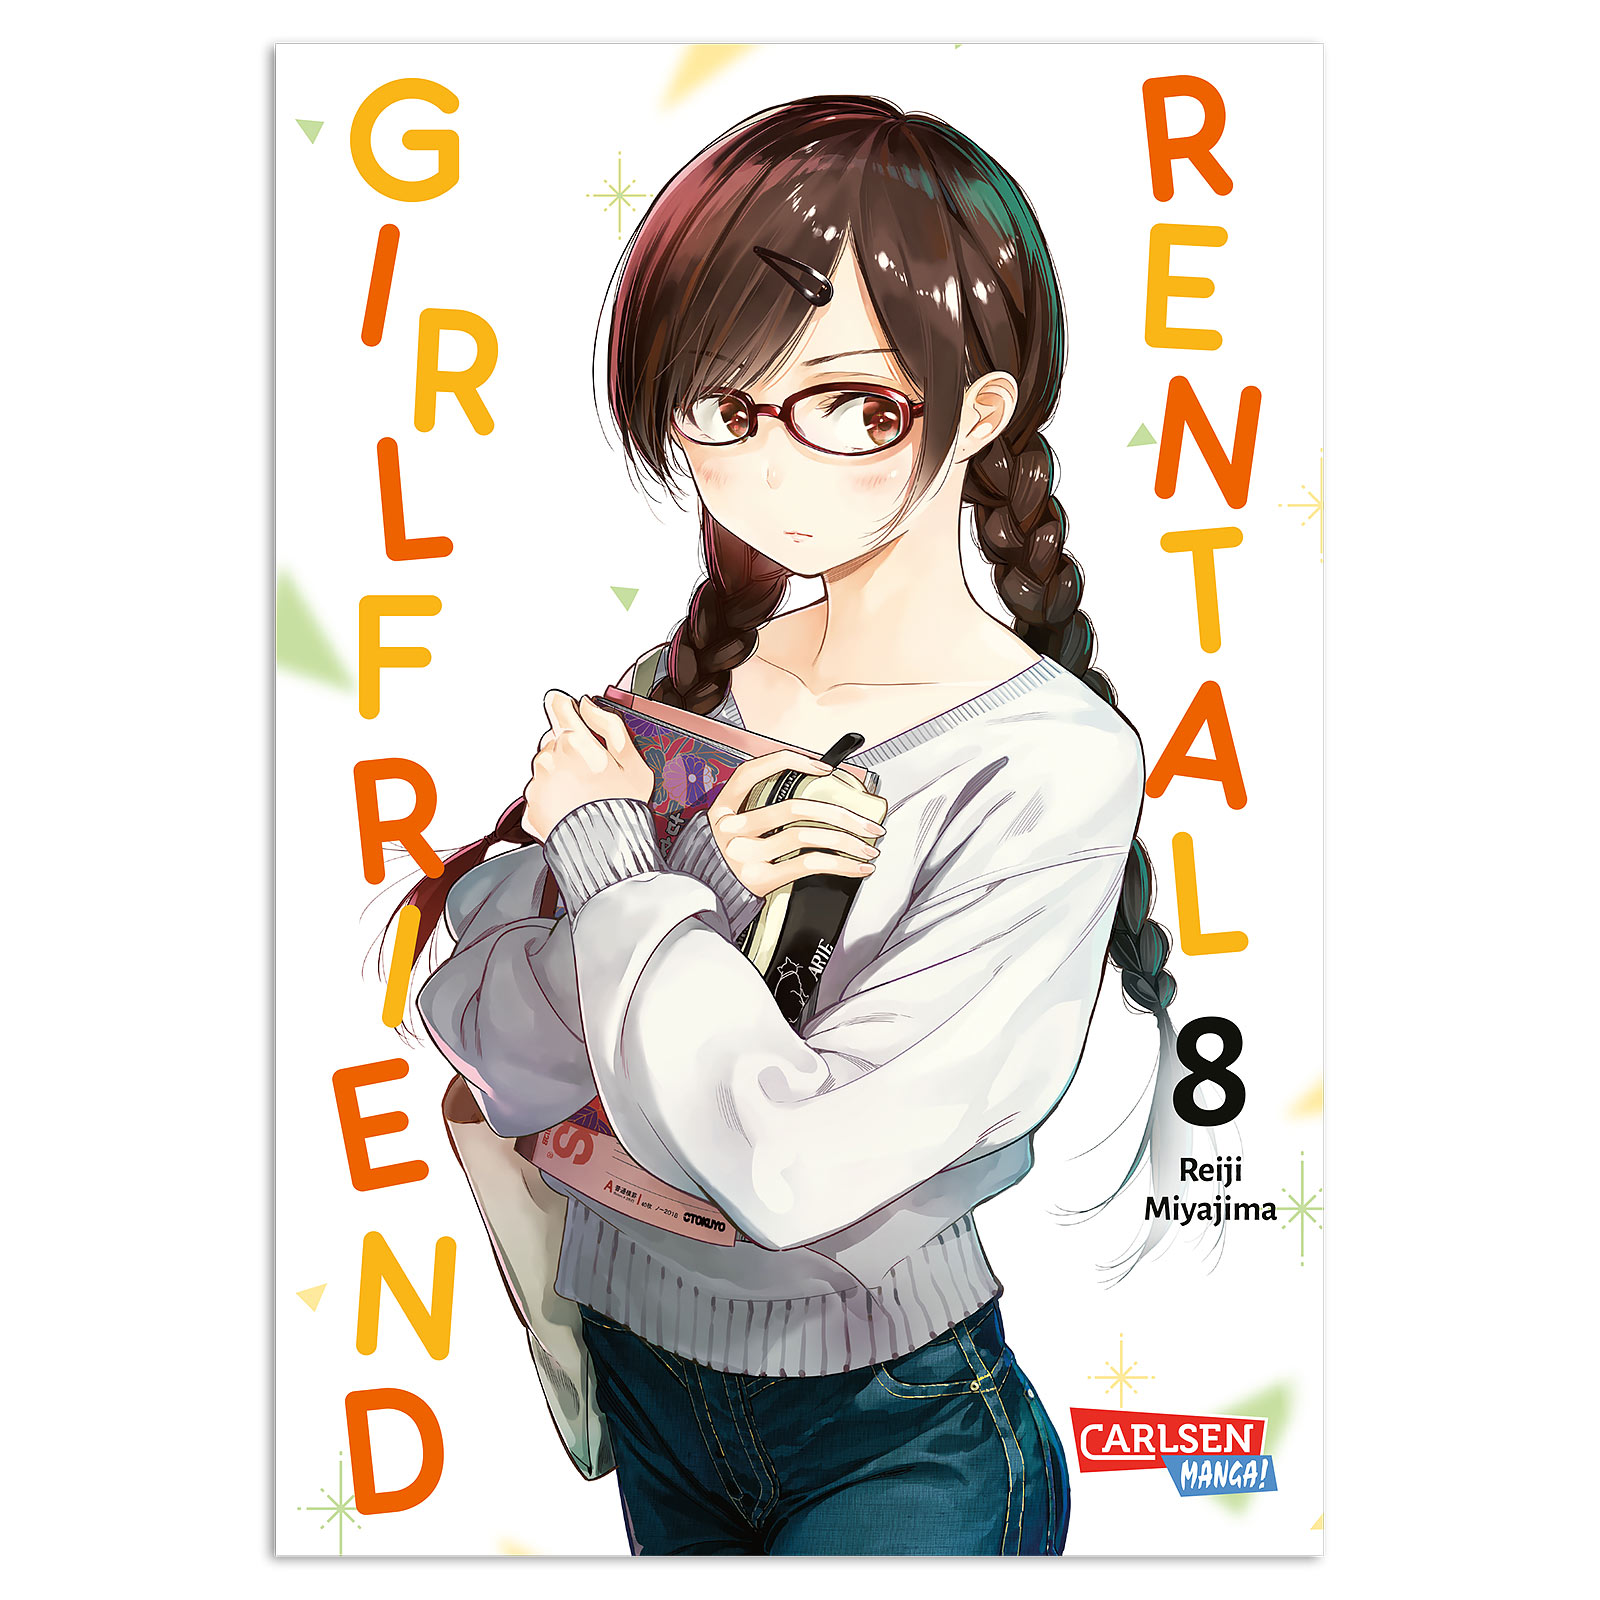 Rental Girlfriend - Volume 8 Paperback